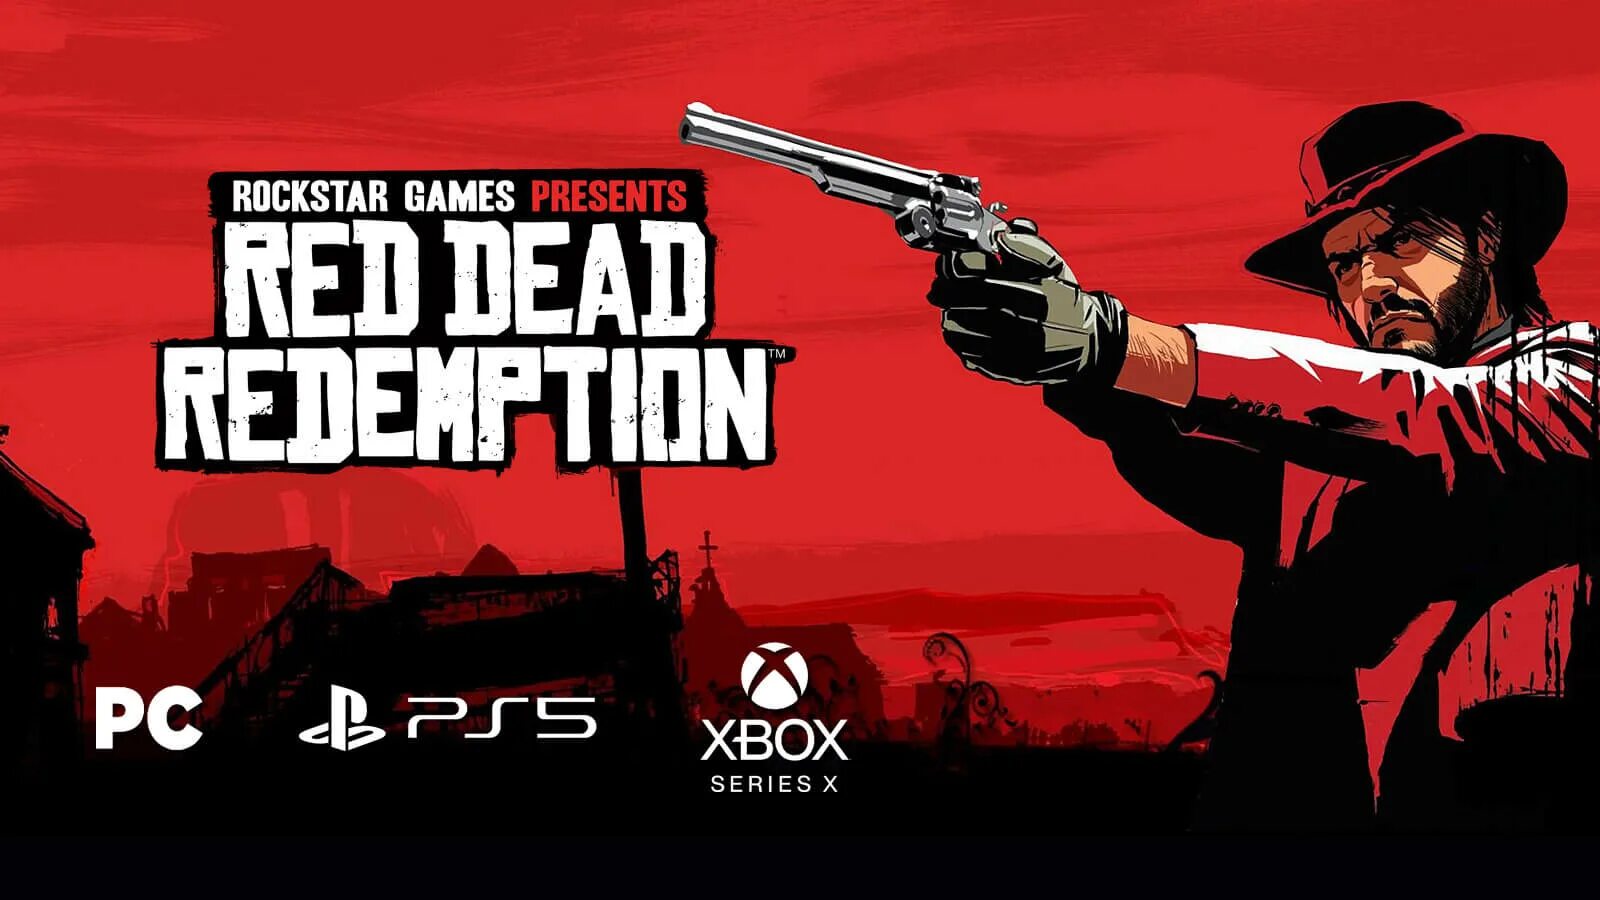 Red dead ps4 купить. Red Dead Redemption 1 ремастер. Red Dead Redemption 1 ps4. Red Dead Redemption 1 Remastered ps5. Red Dead Redemption 1 Remake.